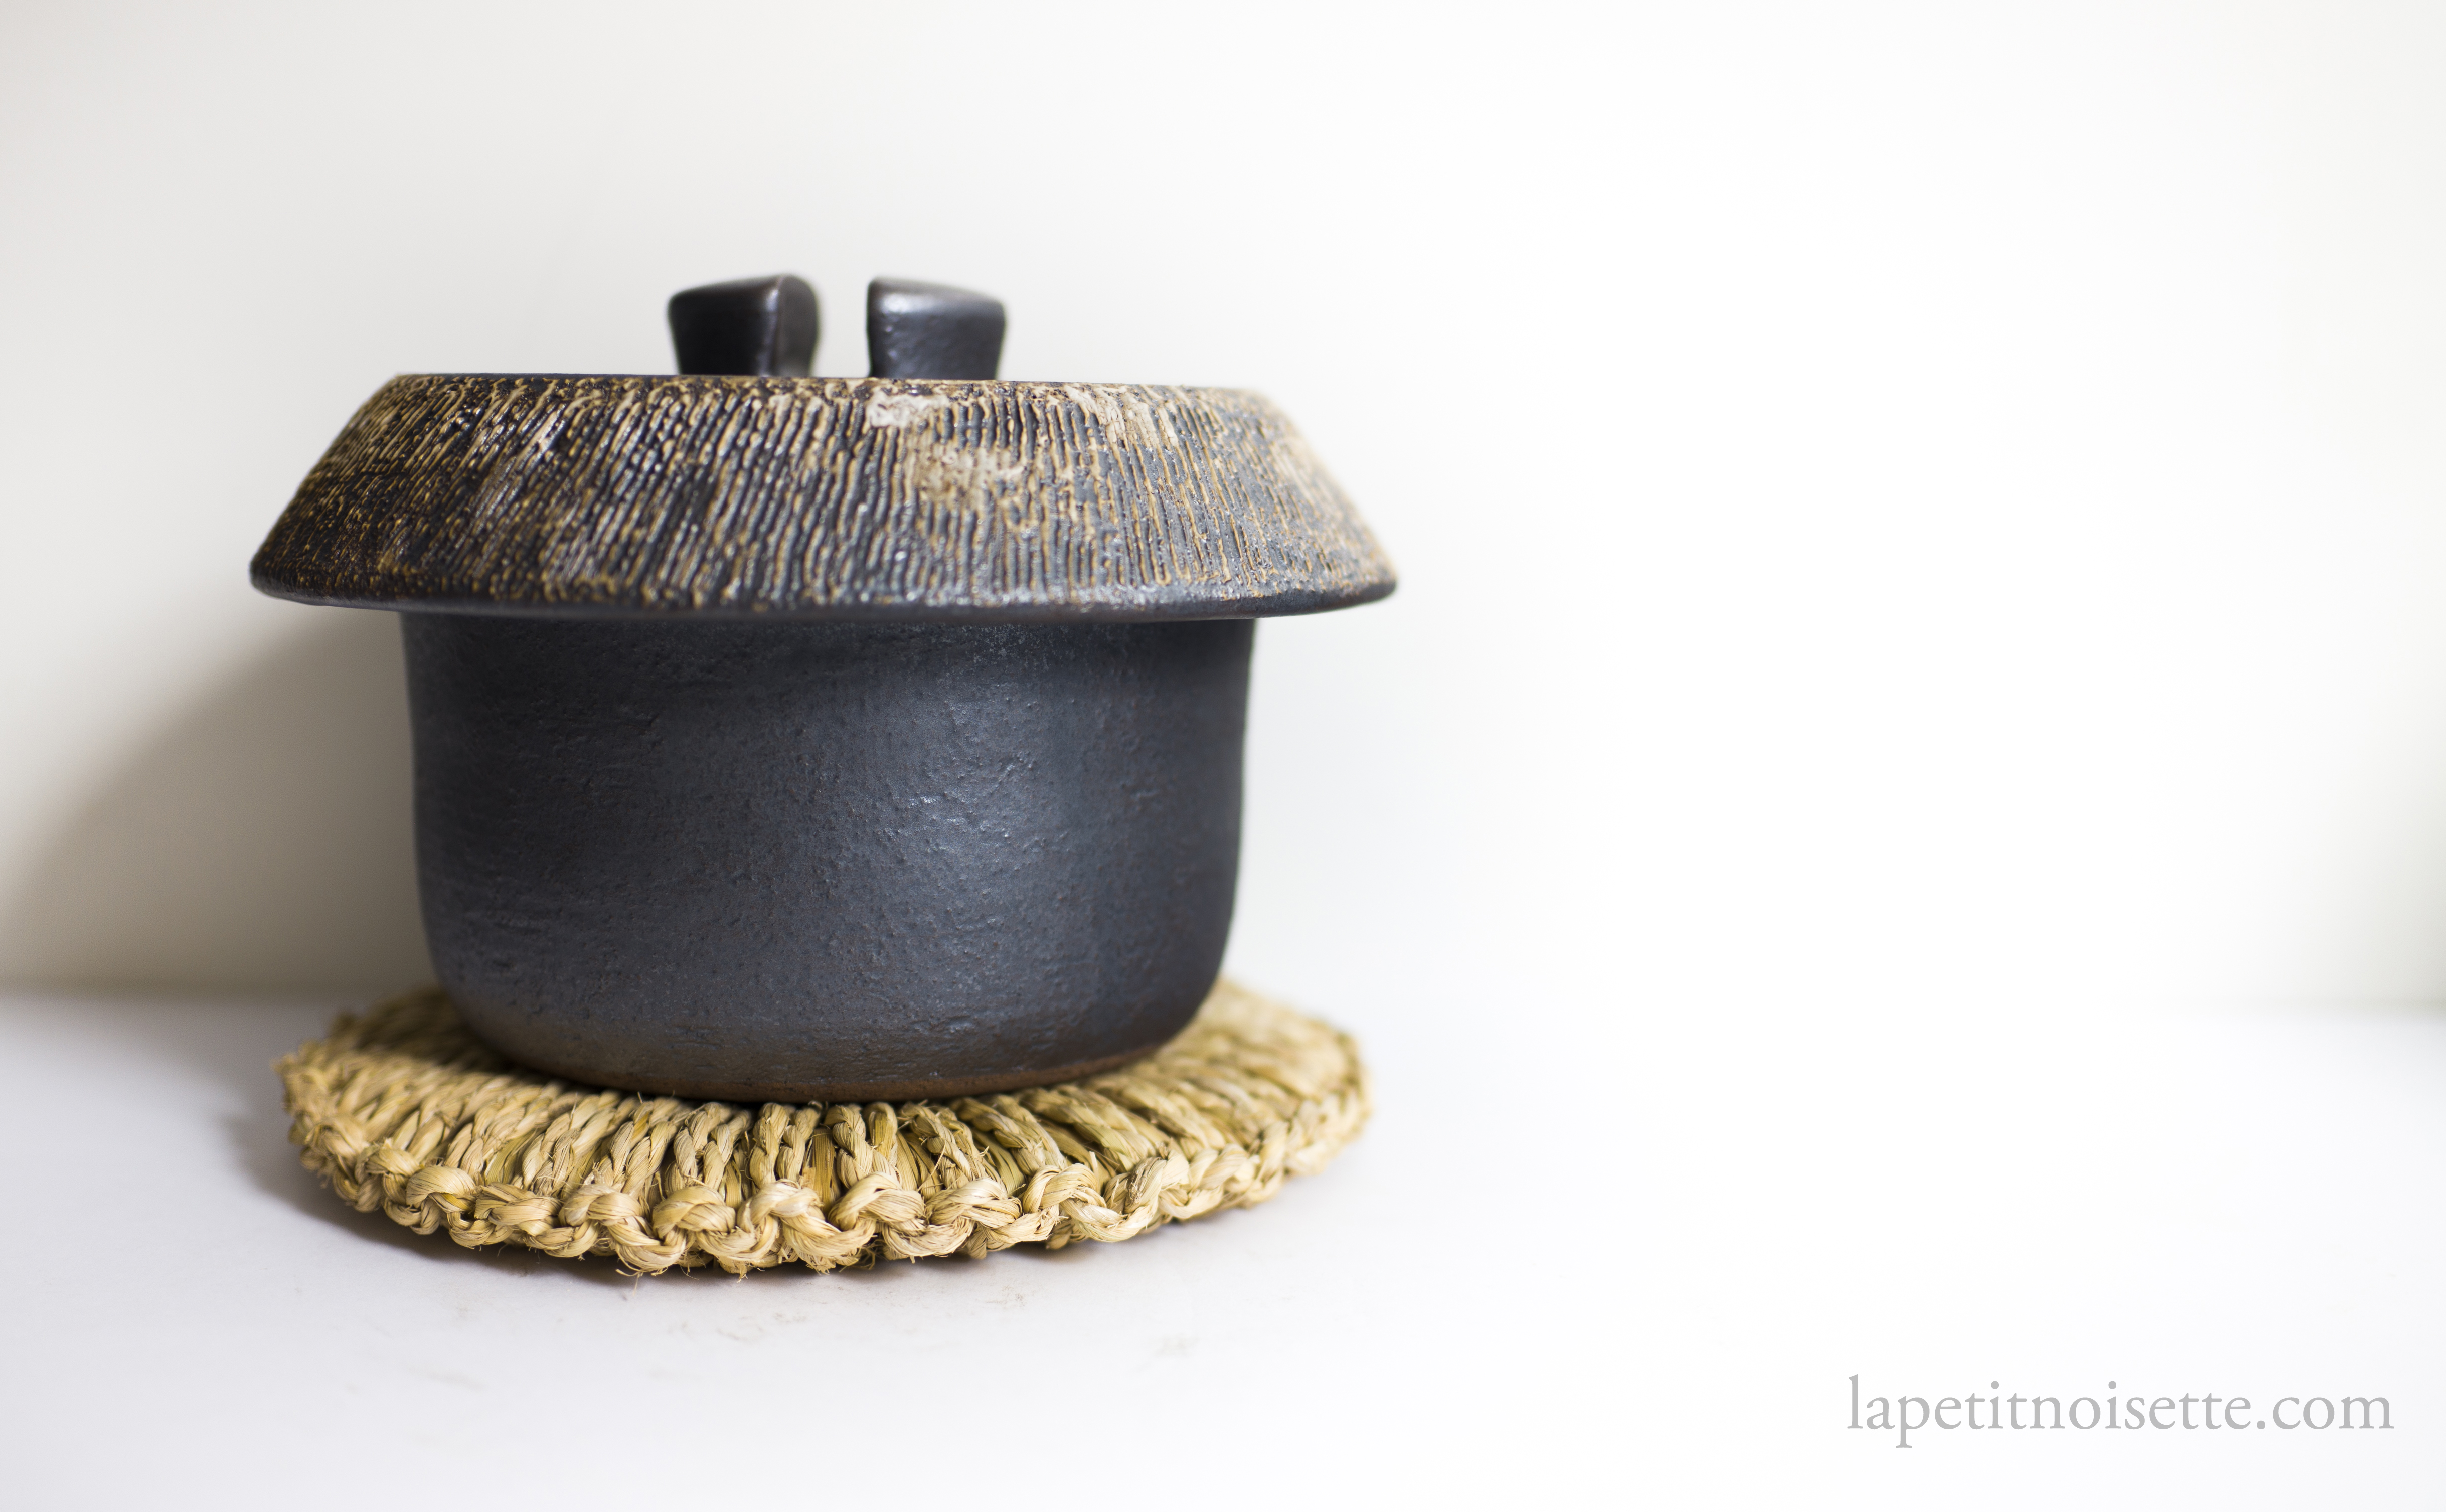 Anraku Kiln's clay pot rice cooker.